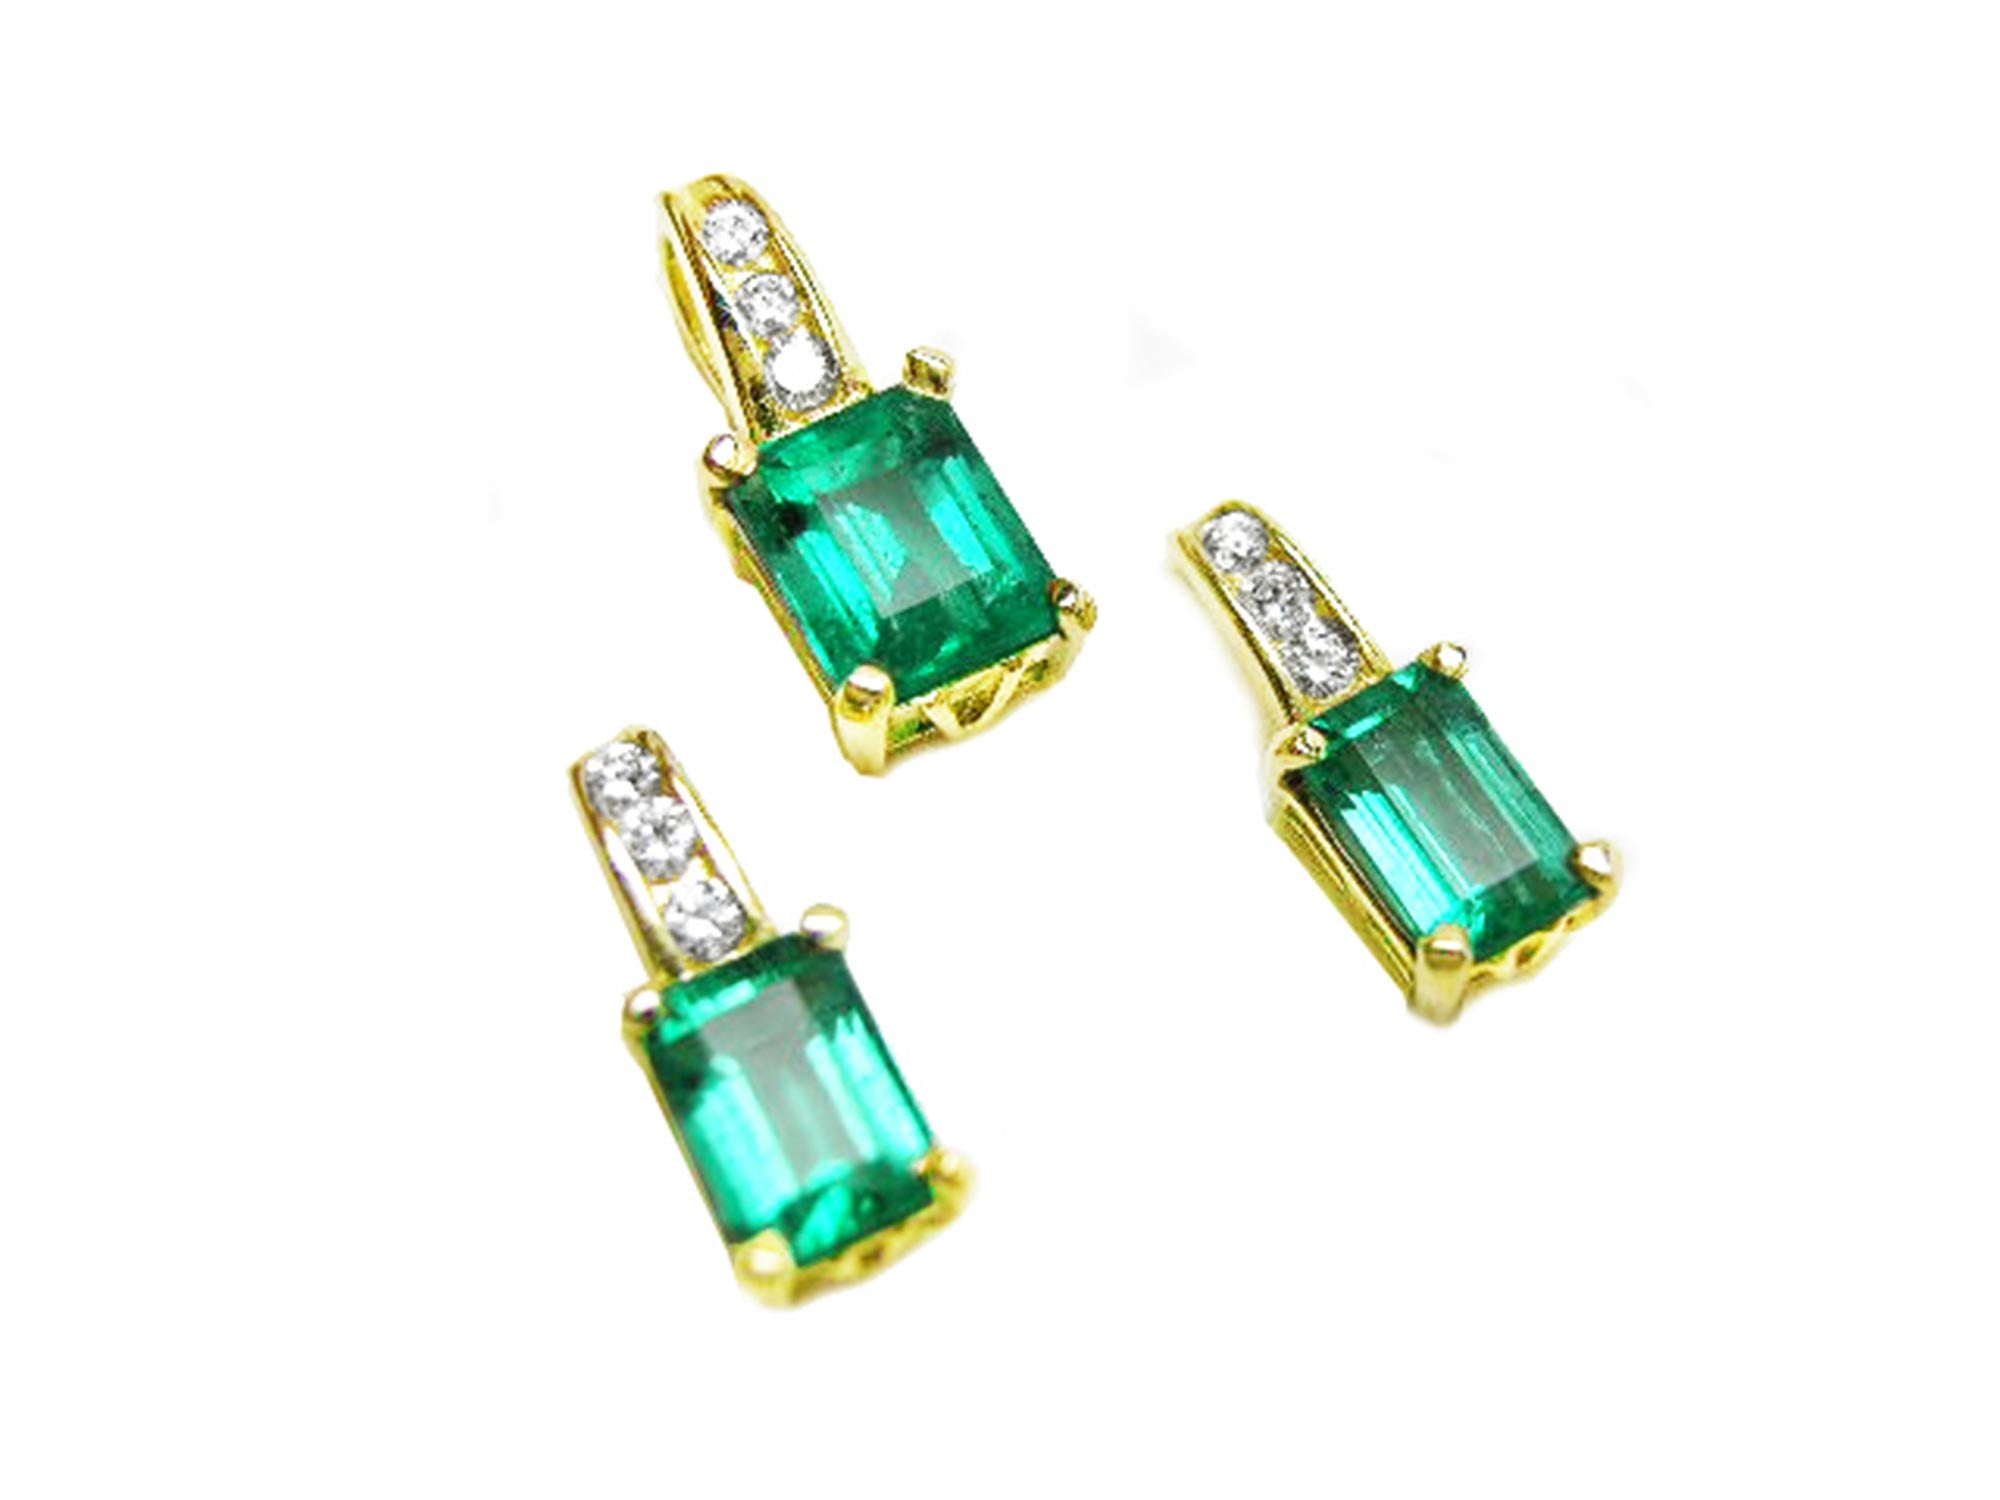 Emerald earrings and pendant set